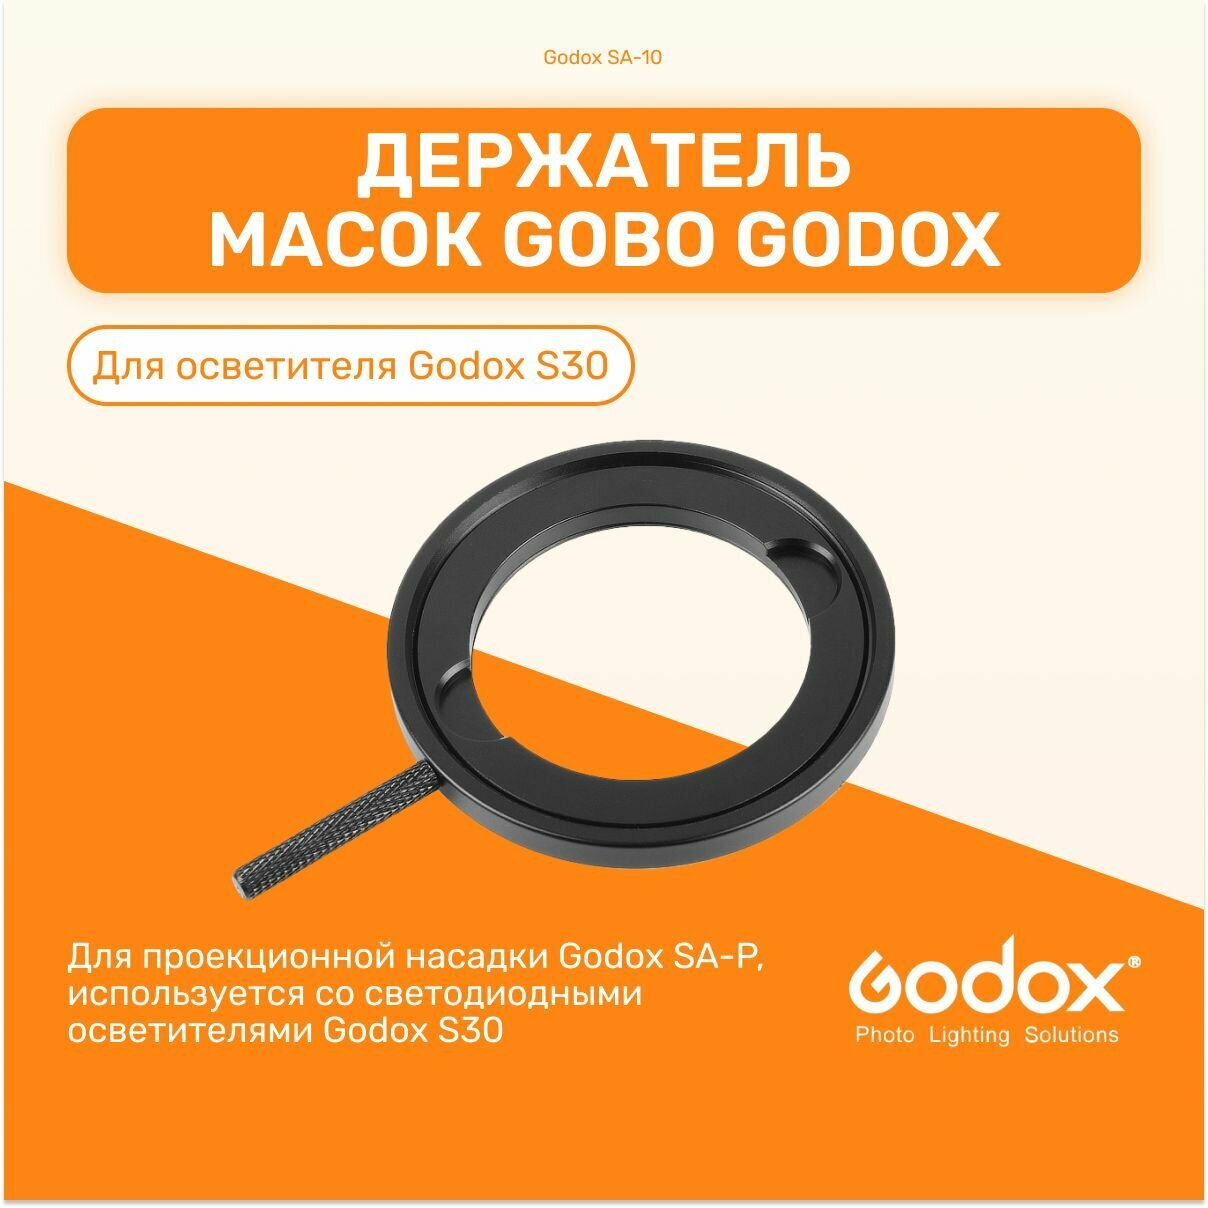 Держатель масок GOBO Godox SA-10 для S30, для для проекционной насадки, студийный свет для фото и видео съемки